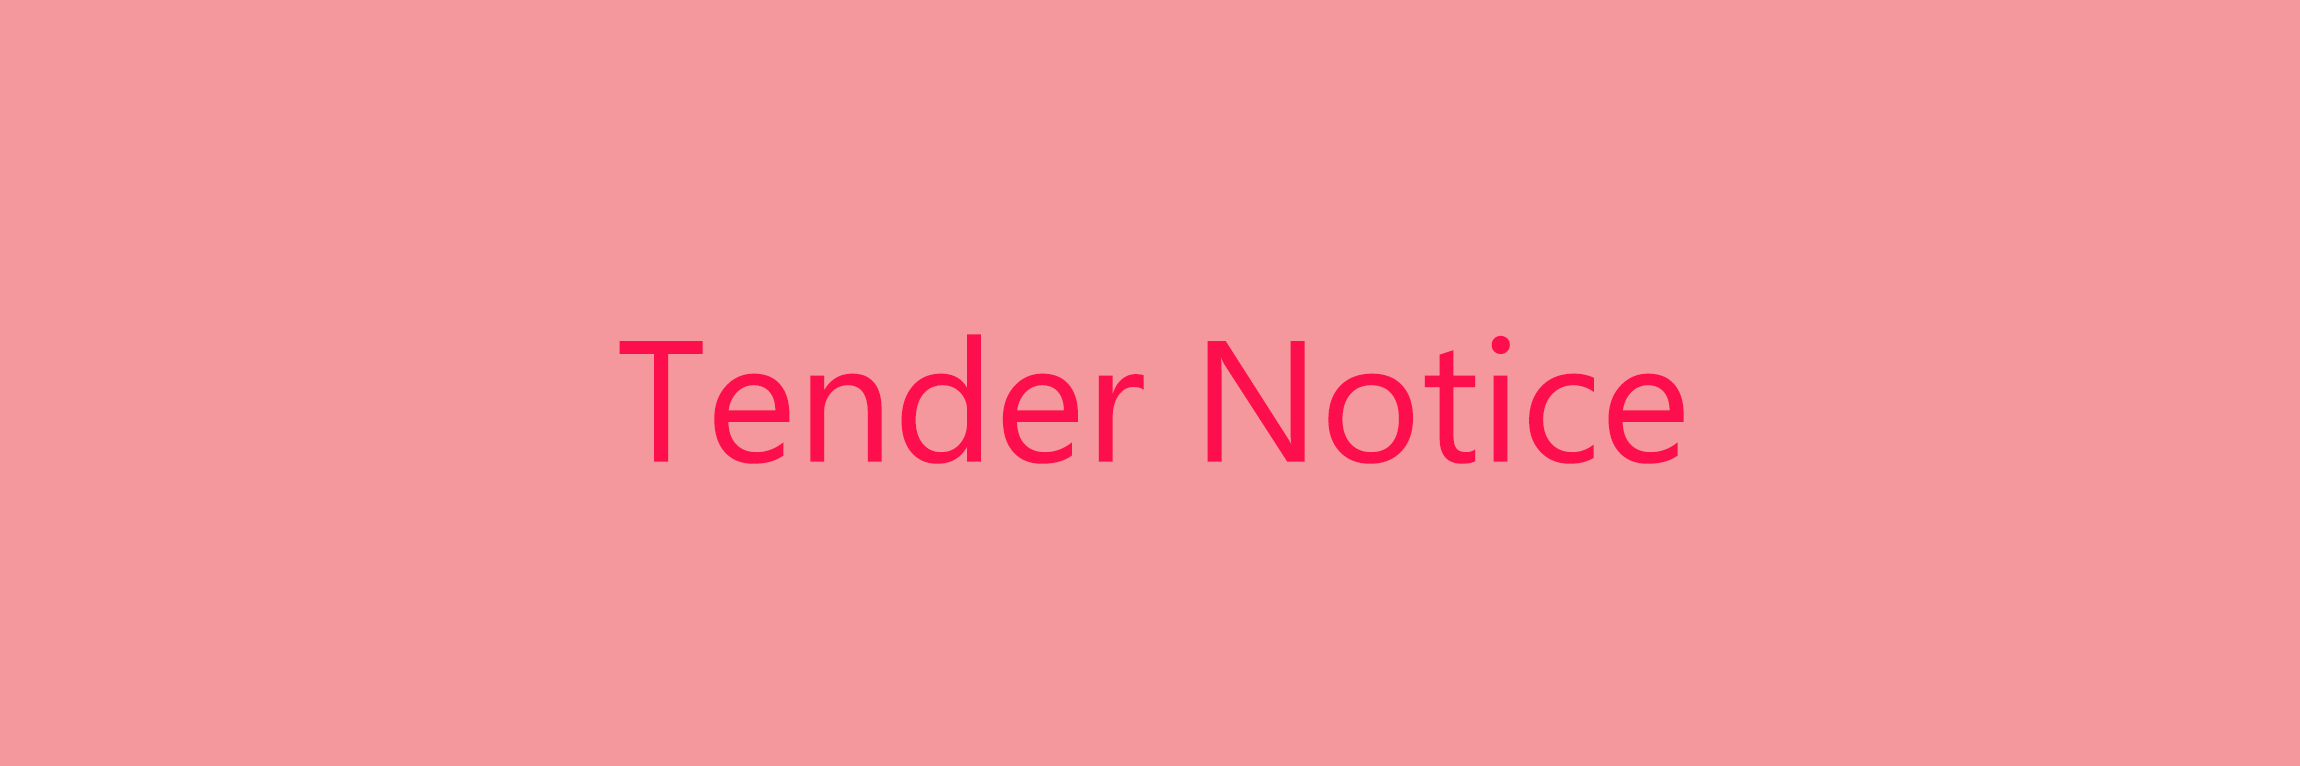 tender-Notice-base-design